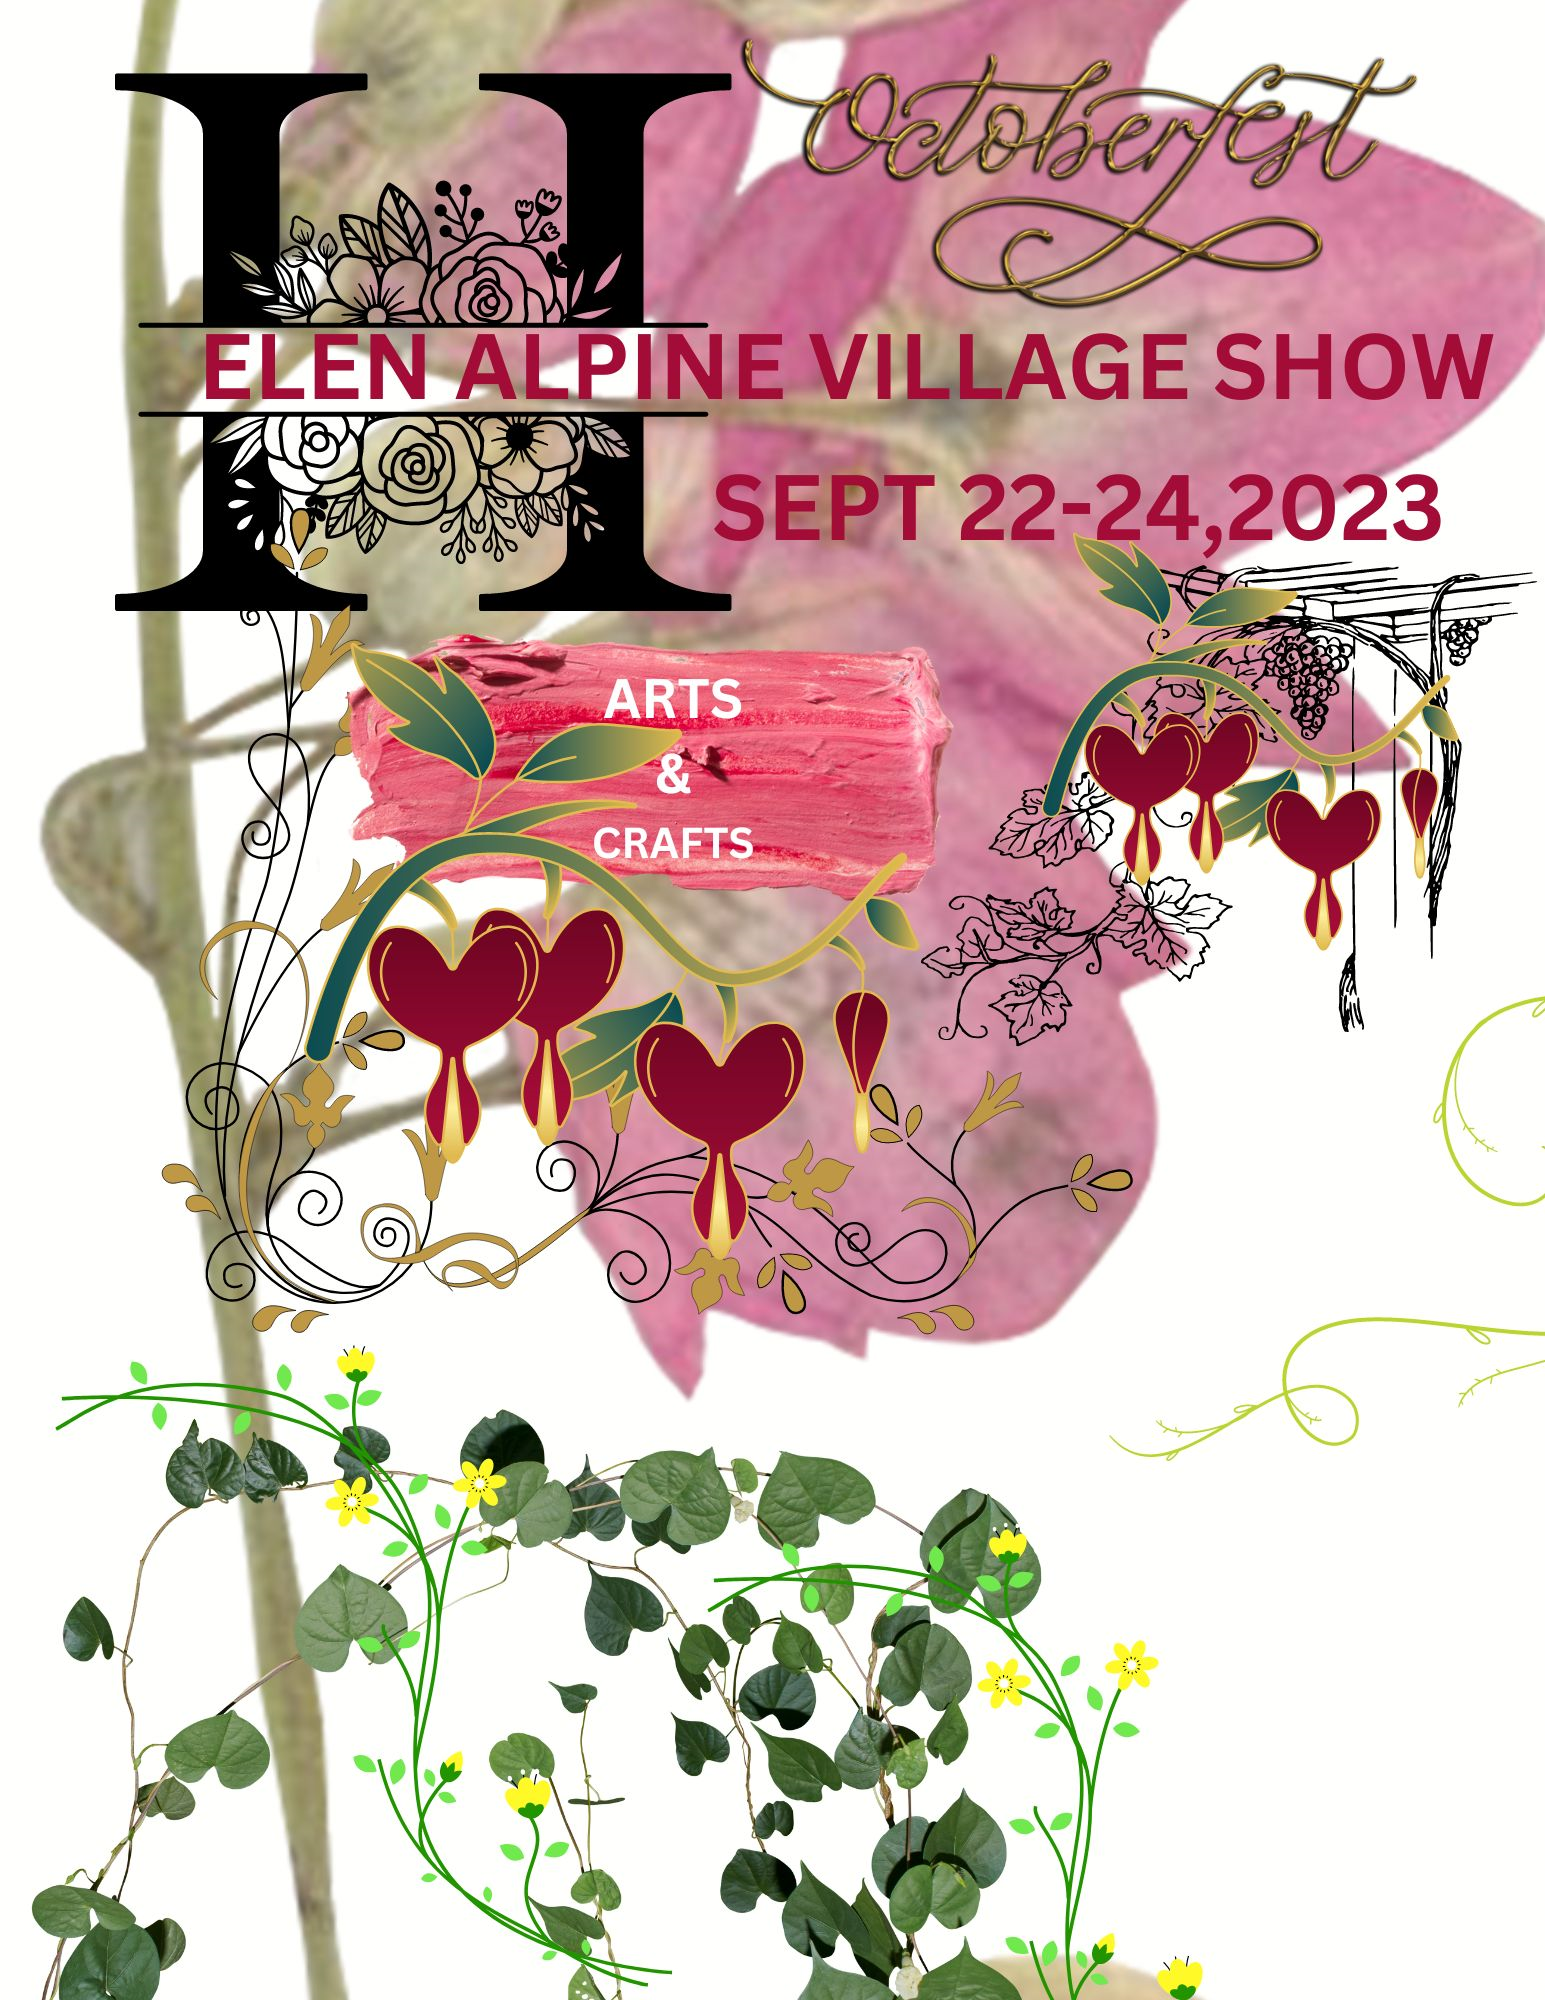 Elen Alpine Village Show